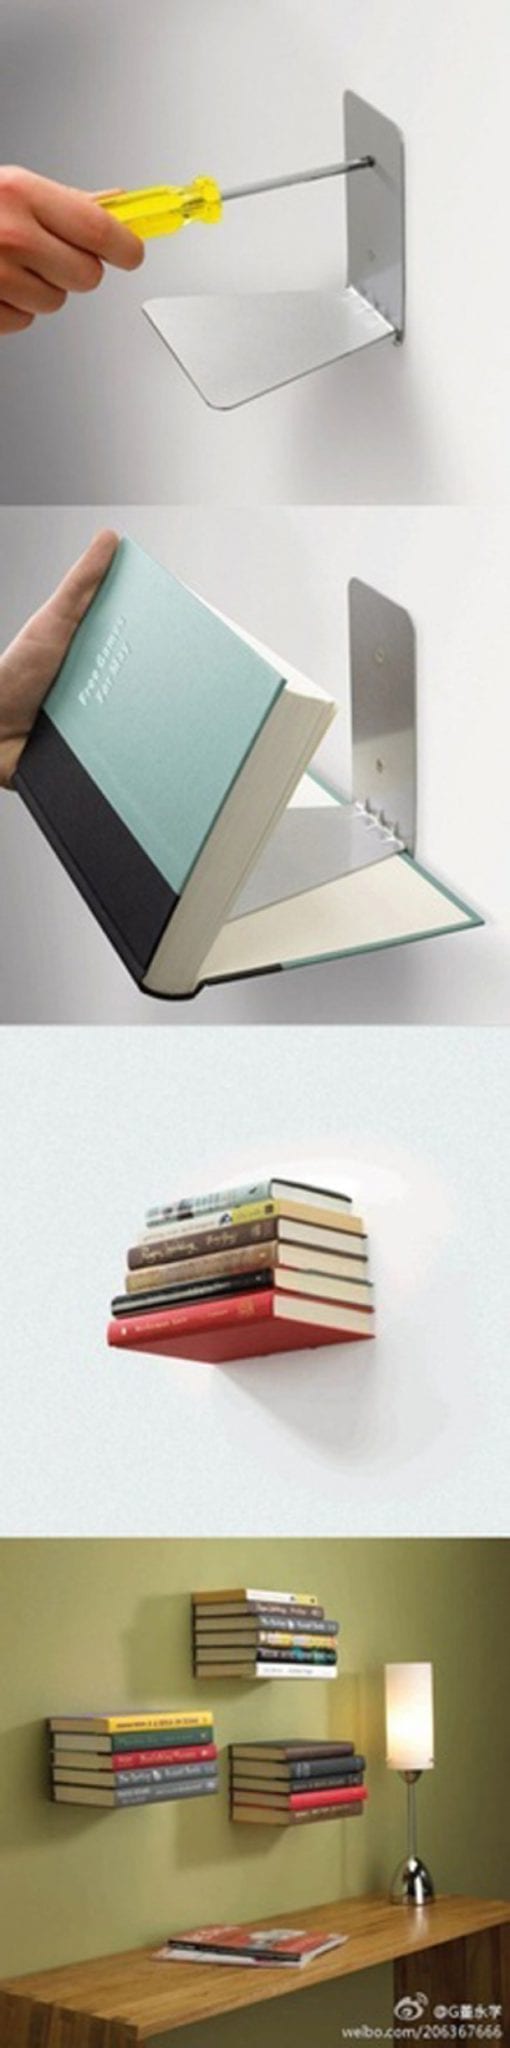 Notitie sturen Umeki Onzichtbare boekenplank - Woontrendz